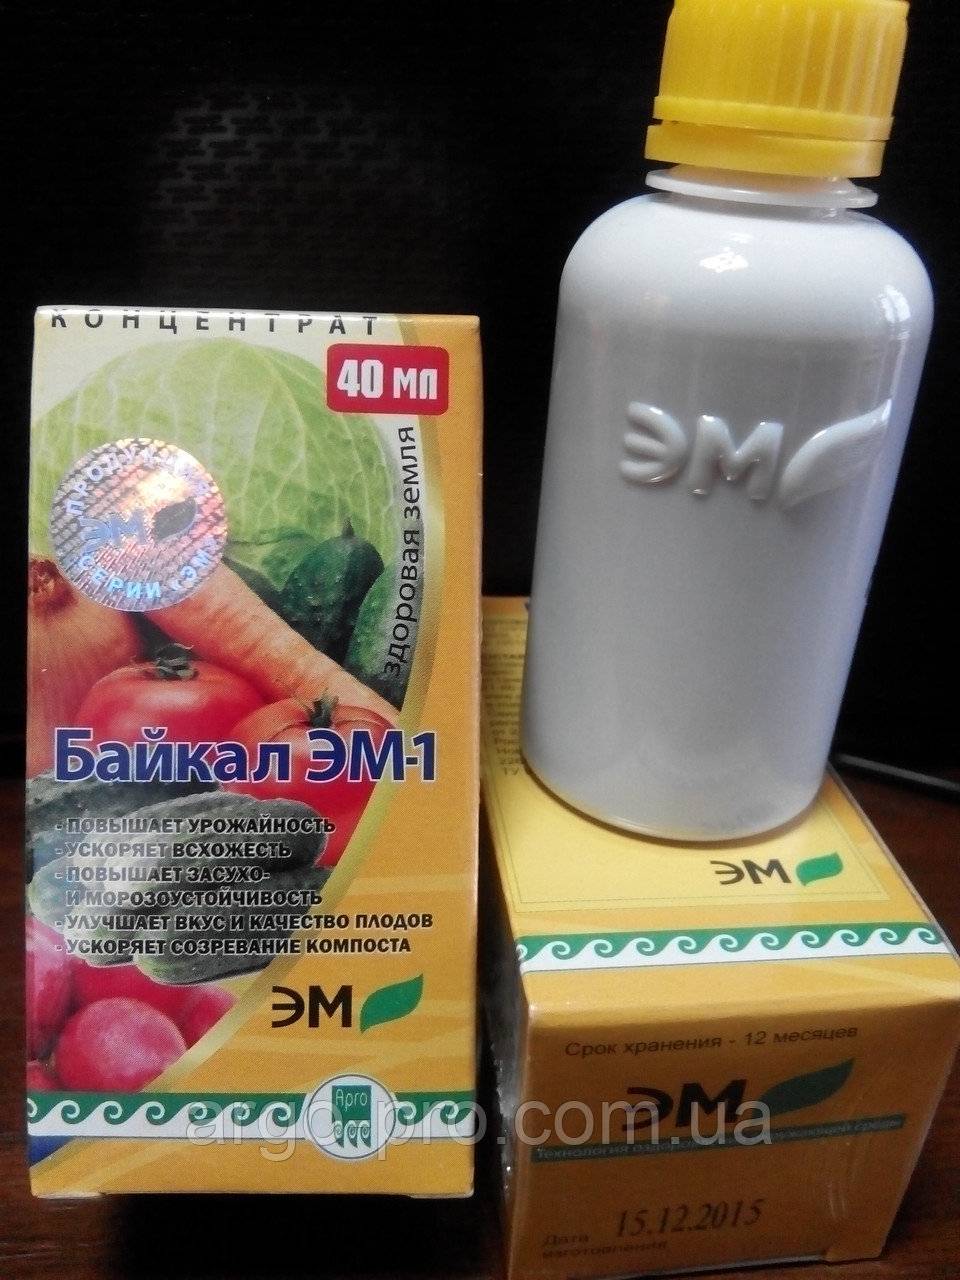 Байкал эм1 — микробиологическое удобрение, применение